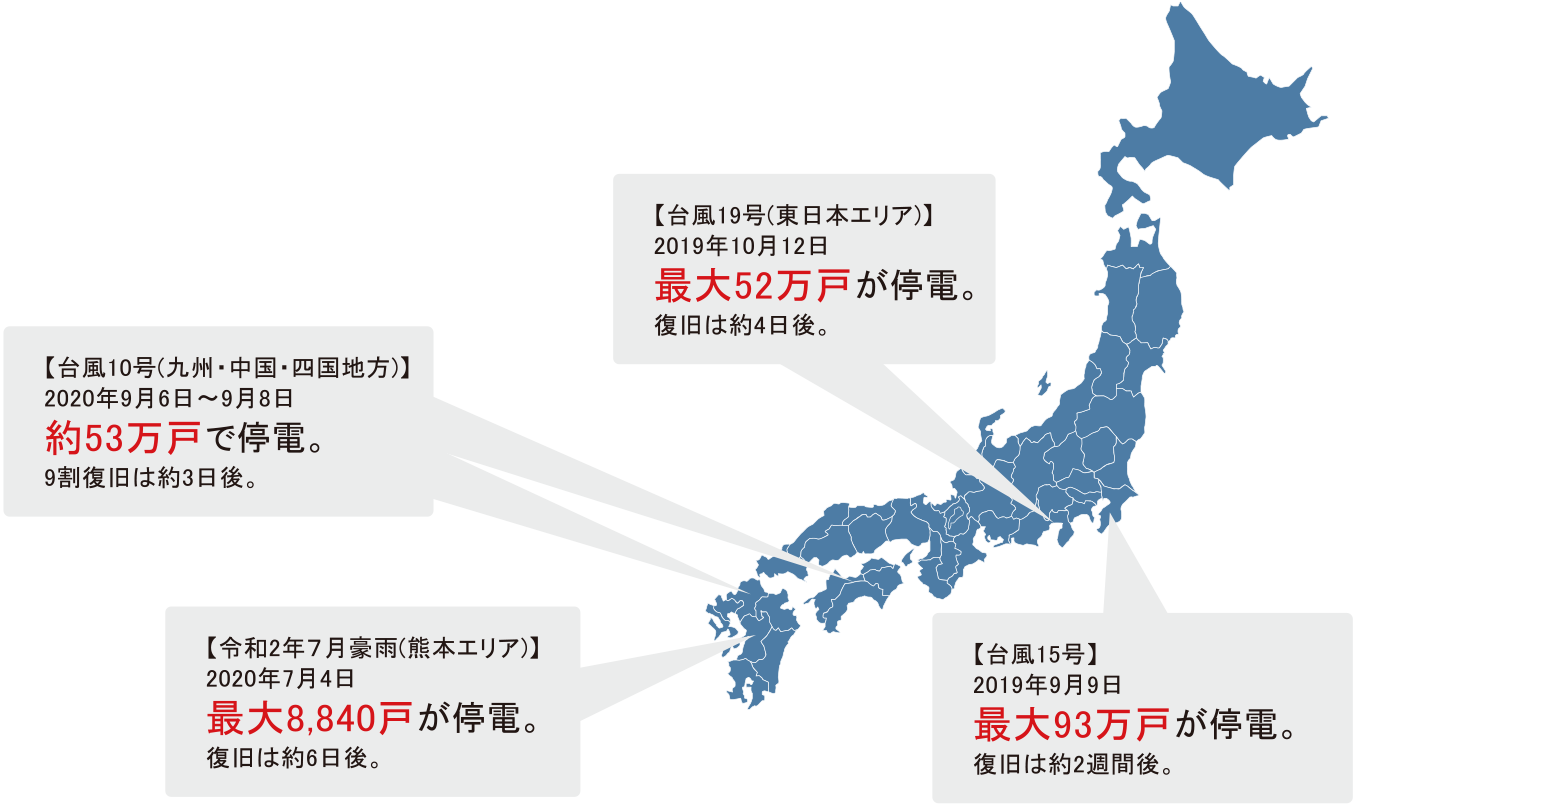 イラスト：2018年に日本で起きた災害での停電戸数。大阪北部地震で約17万戸、西日本豪雨で約25万4千戸、台風21号で約225万8千戸、北海道胆振東部地震では約295万戸、台風24号で119万戸以上が停電した。